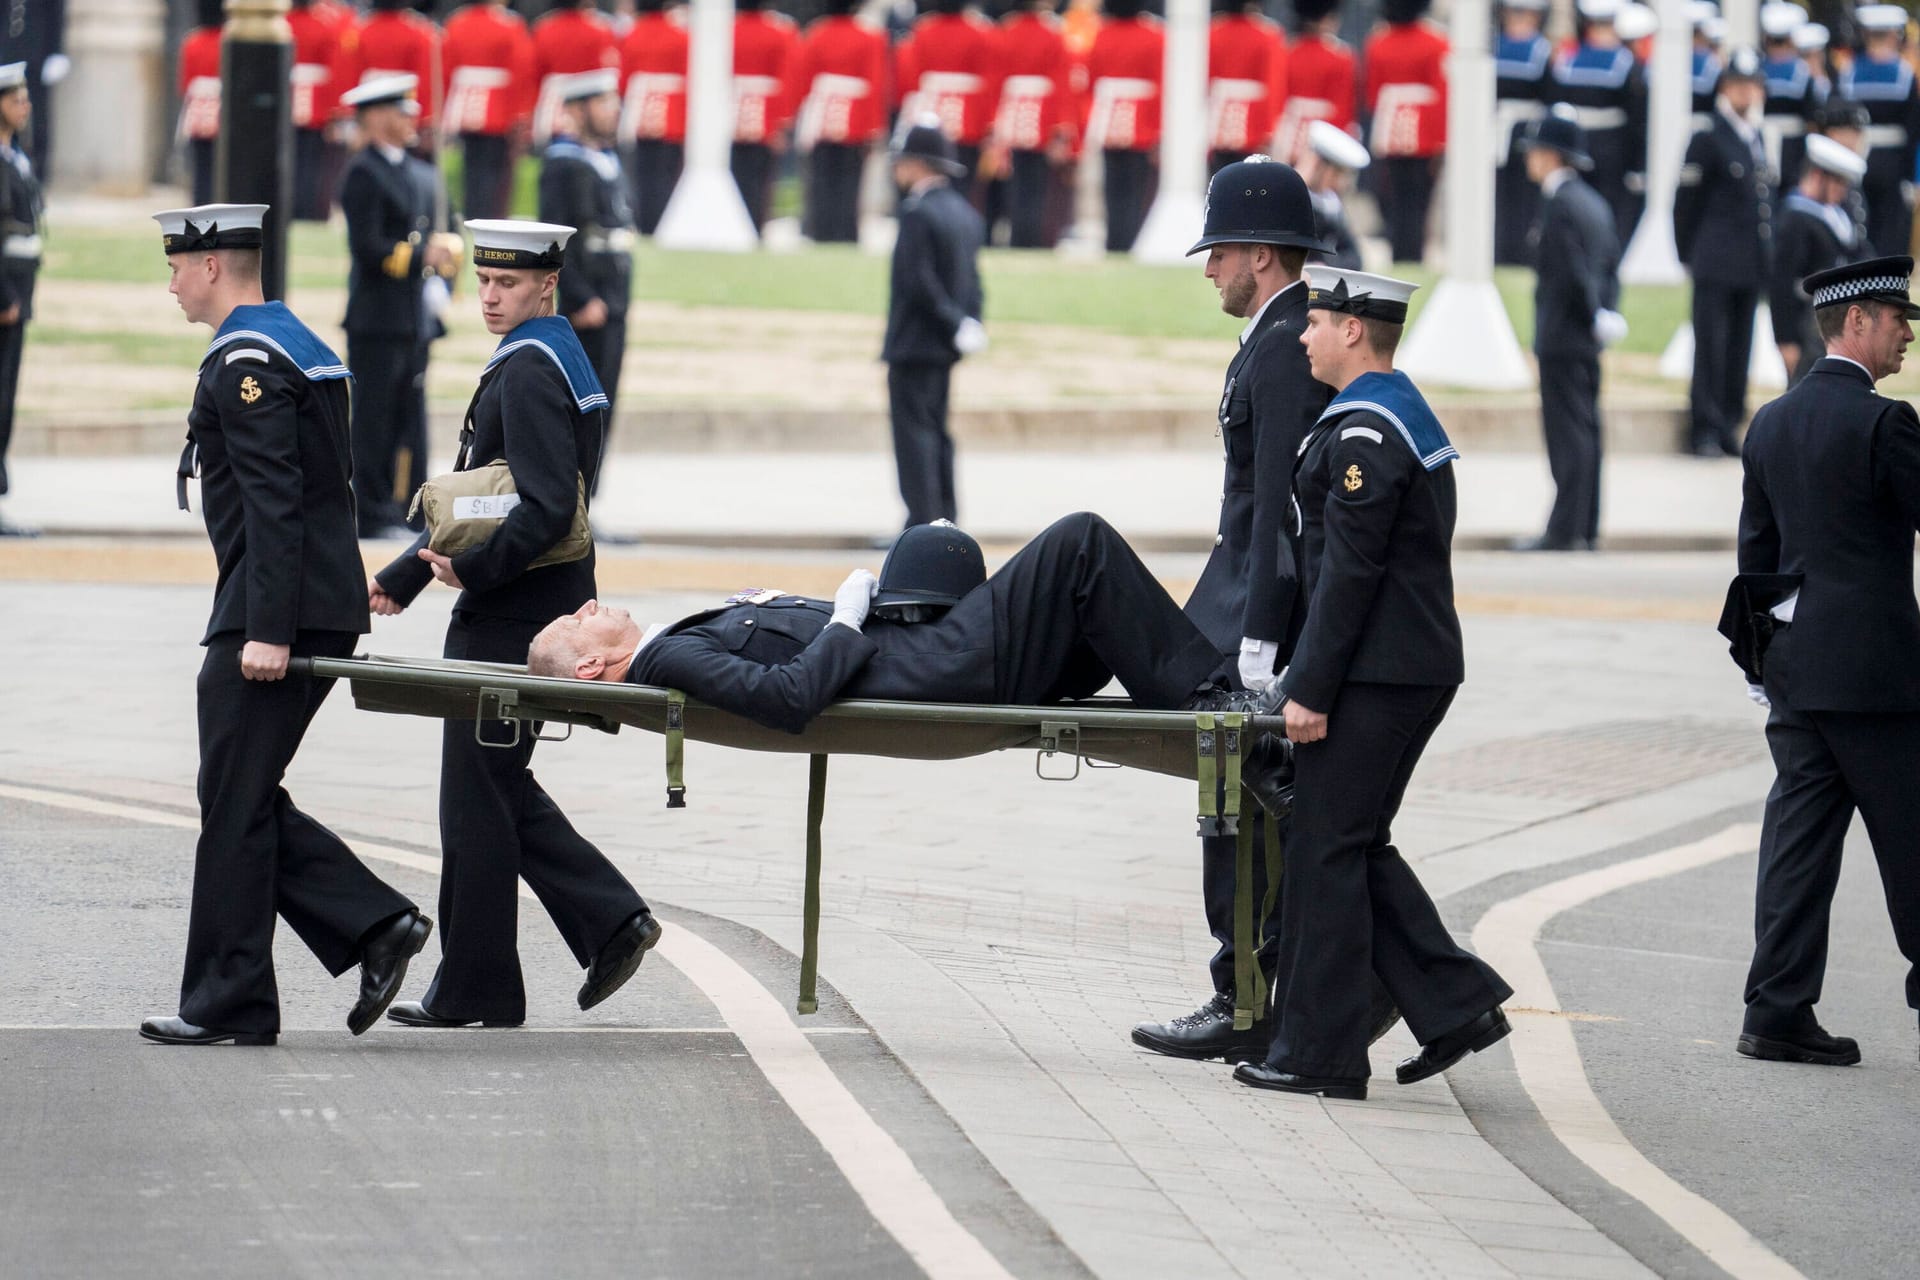 19. September 2022 in London: Bei der Beerdigungszeremonie für die Queen fällt ein Sicherheitsbeamter in Ohnmacht.